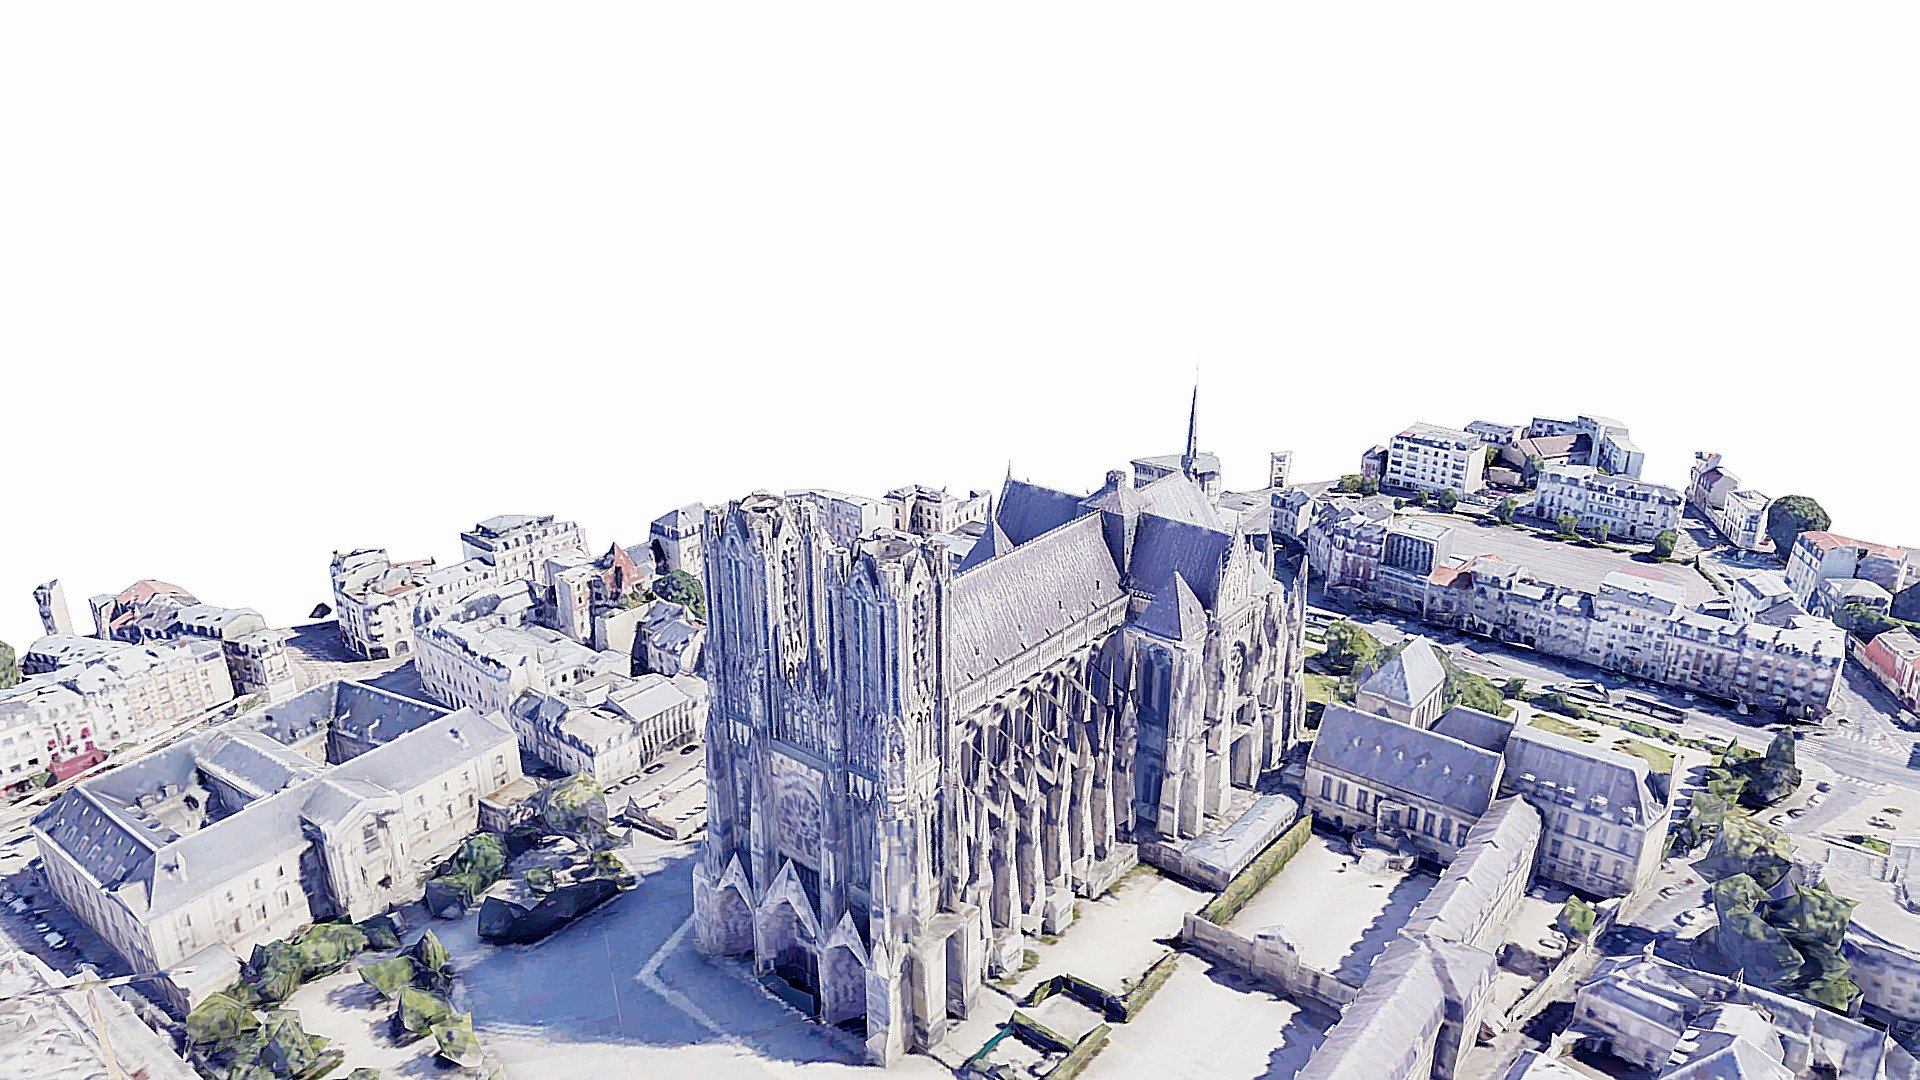 Notre-Dame de Reims (/ˌnɒtrə ˈdɑːm, ˌnoʊtrə ˈdeɪm, ˌnoʊtrə ˈdɑːm/;[2][3][4] French: [nɔtʁə dam də ʁɛ̃s] (About this soundlisten); meaning &ldquo;Our Lady of Reims